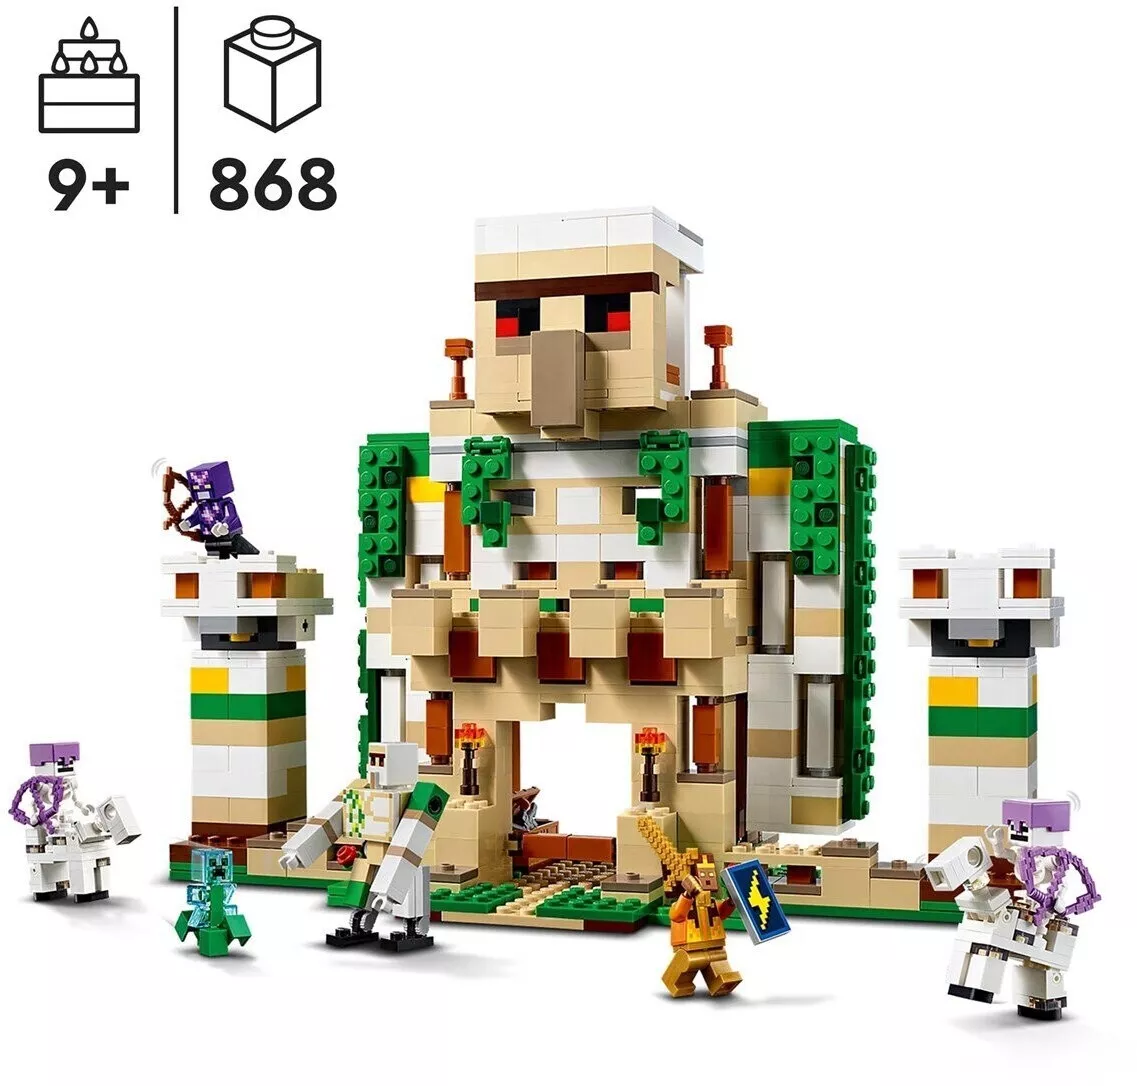 LEGO 21250 Die Eisengolem-Festung Minecraft